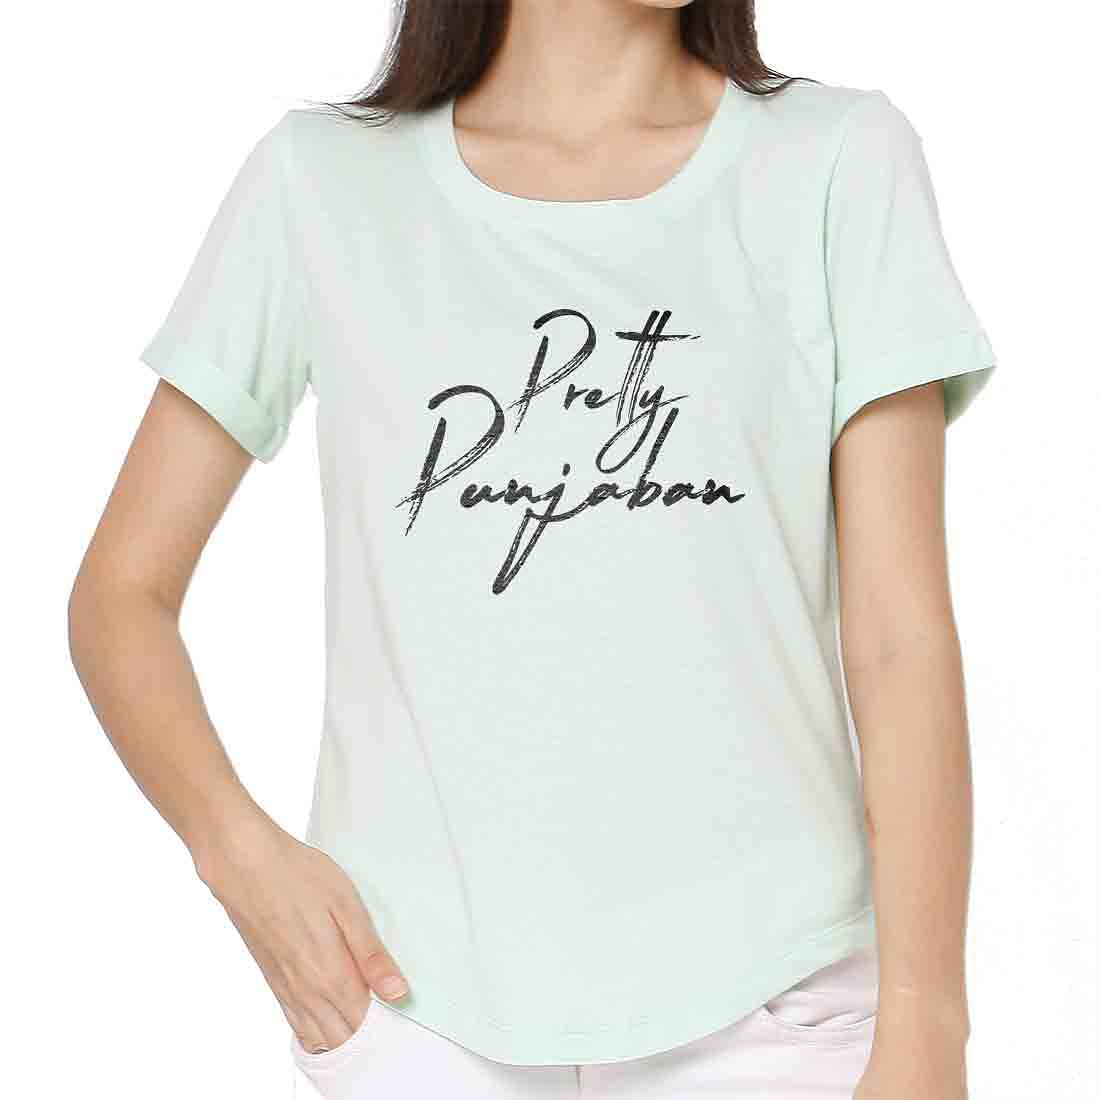 Funny T Shirts For Women Punjabi Tees - Cool Punjaban Nutcase